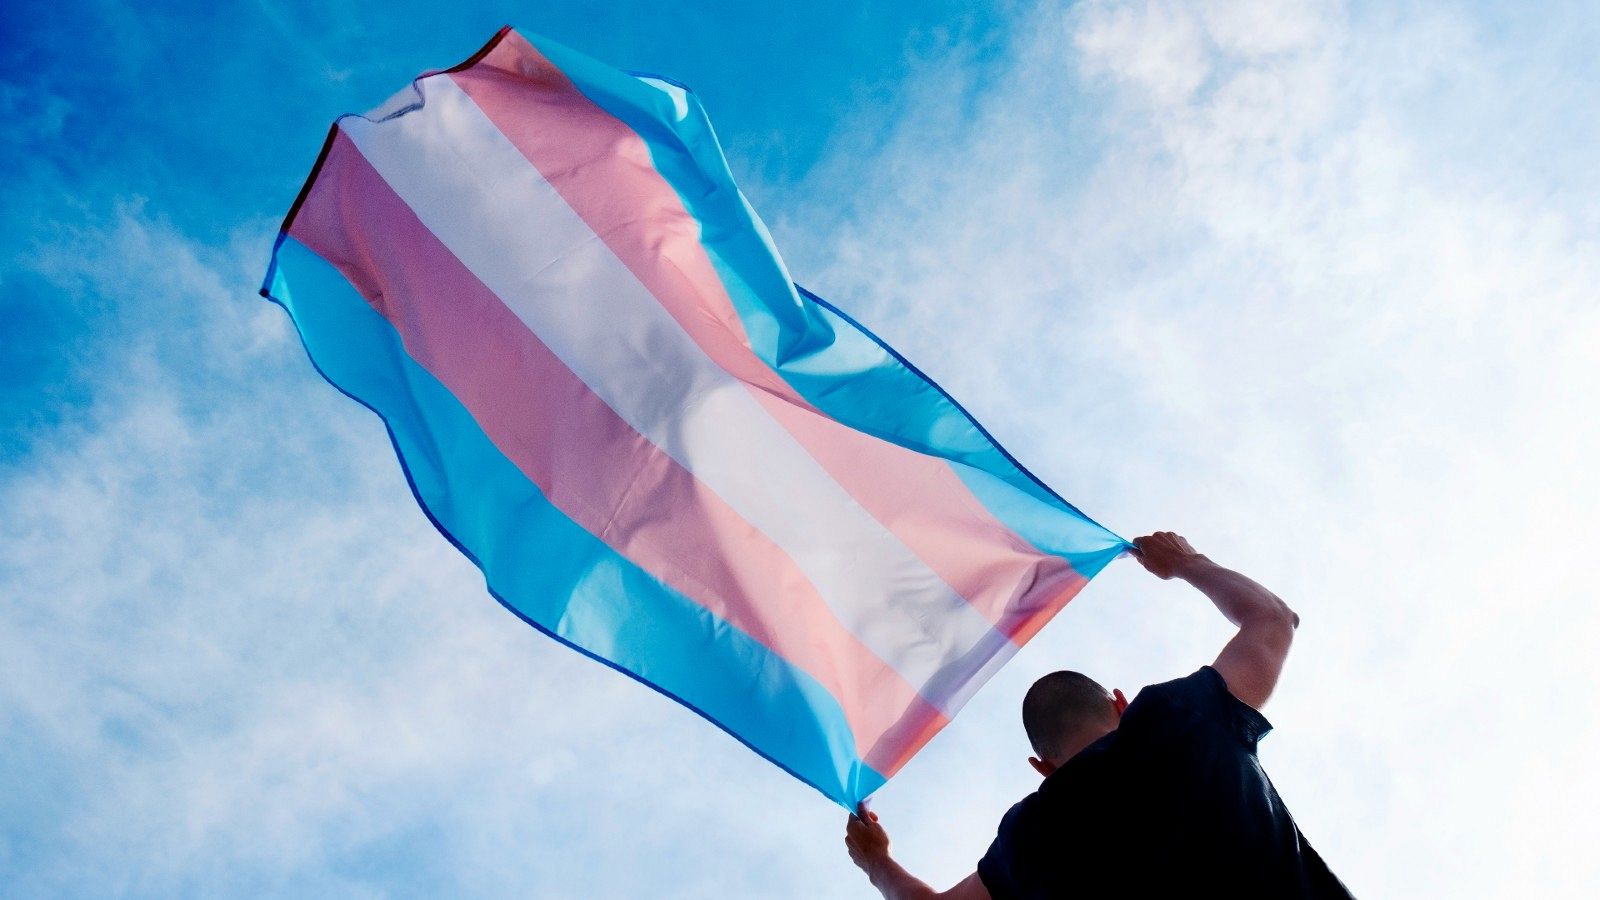 Una persona porta una bandera azul, rosa y blanca, símbolo del colectivo trans